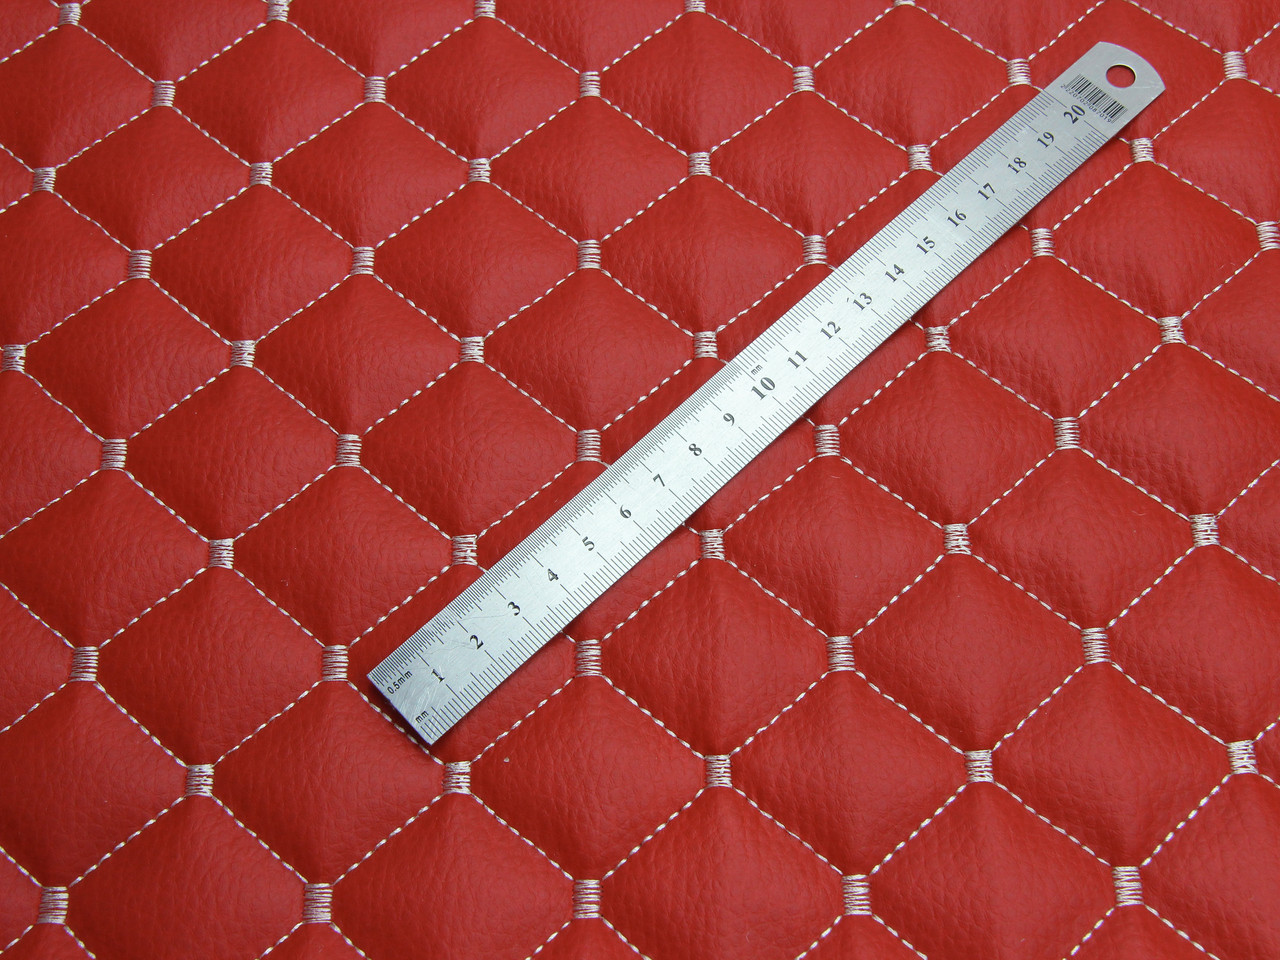 Кожзам стёганый красный «Ромб» (прошитый светло-беживой нитью) дублированный синтепоном и флизелином, ширина 1,35м детальная фотка